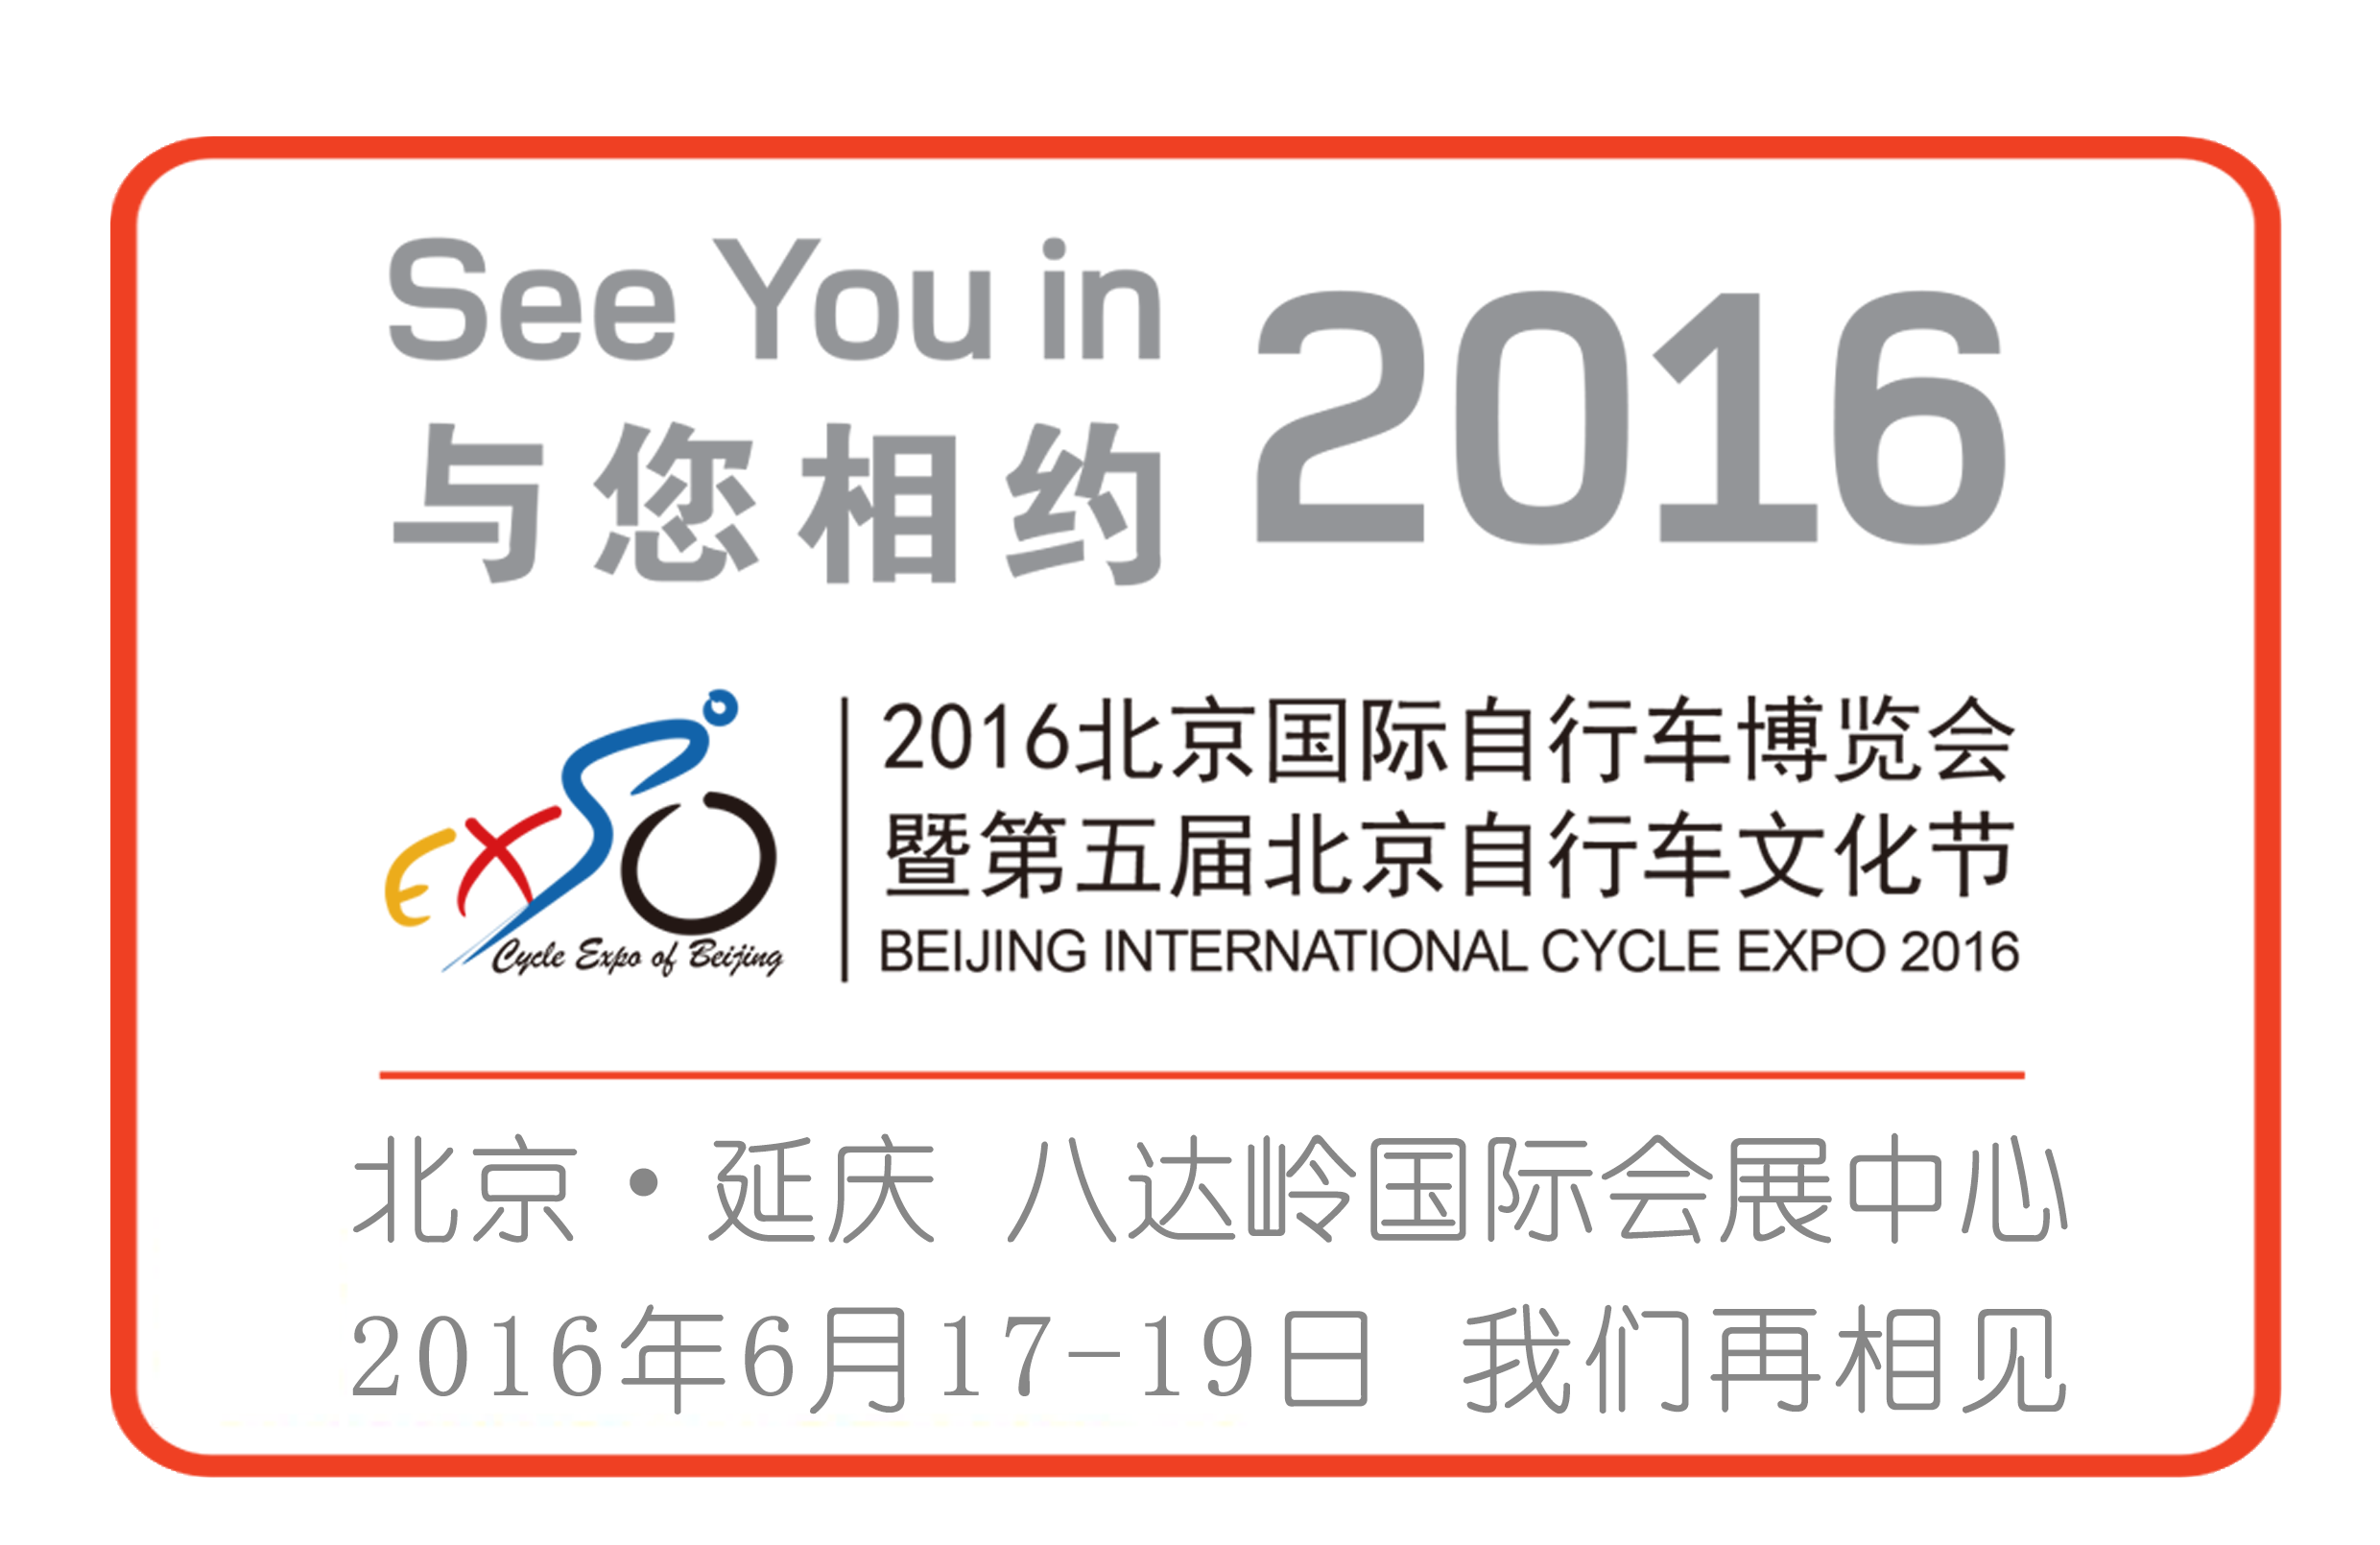 聚焦国际最前沿业内资讯  北京展总监带您纵观Eurobike